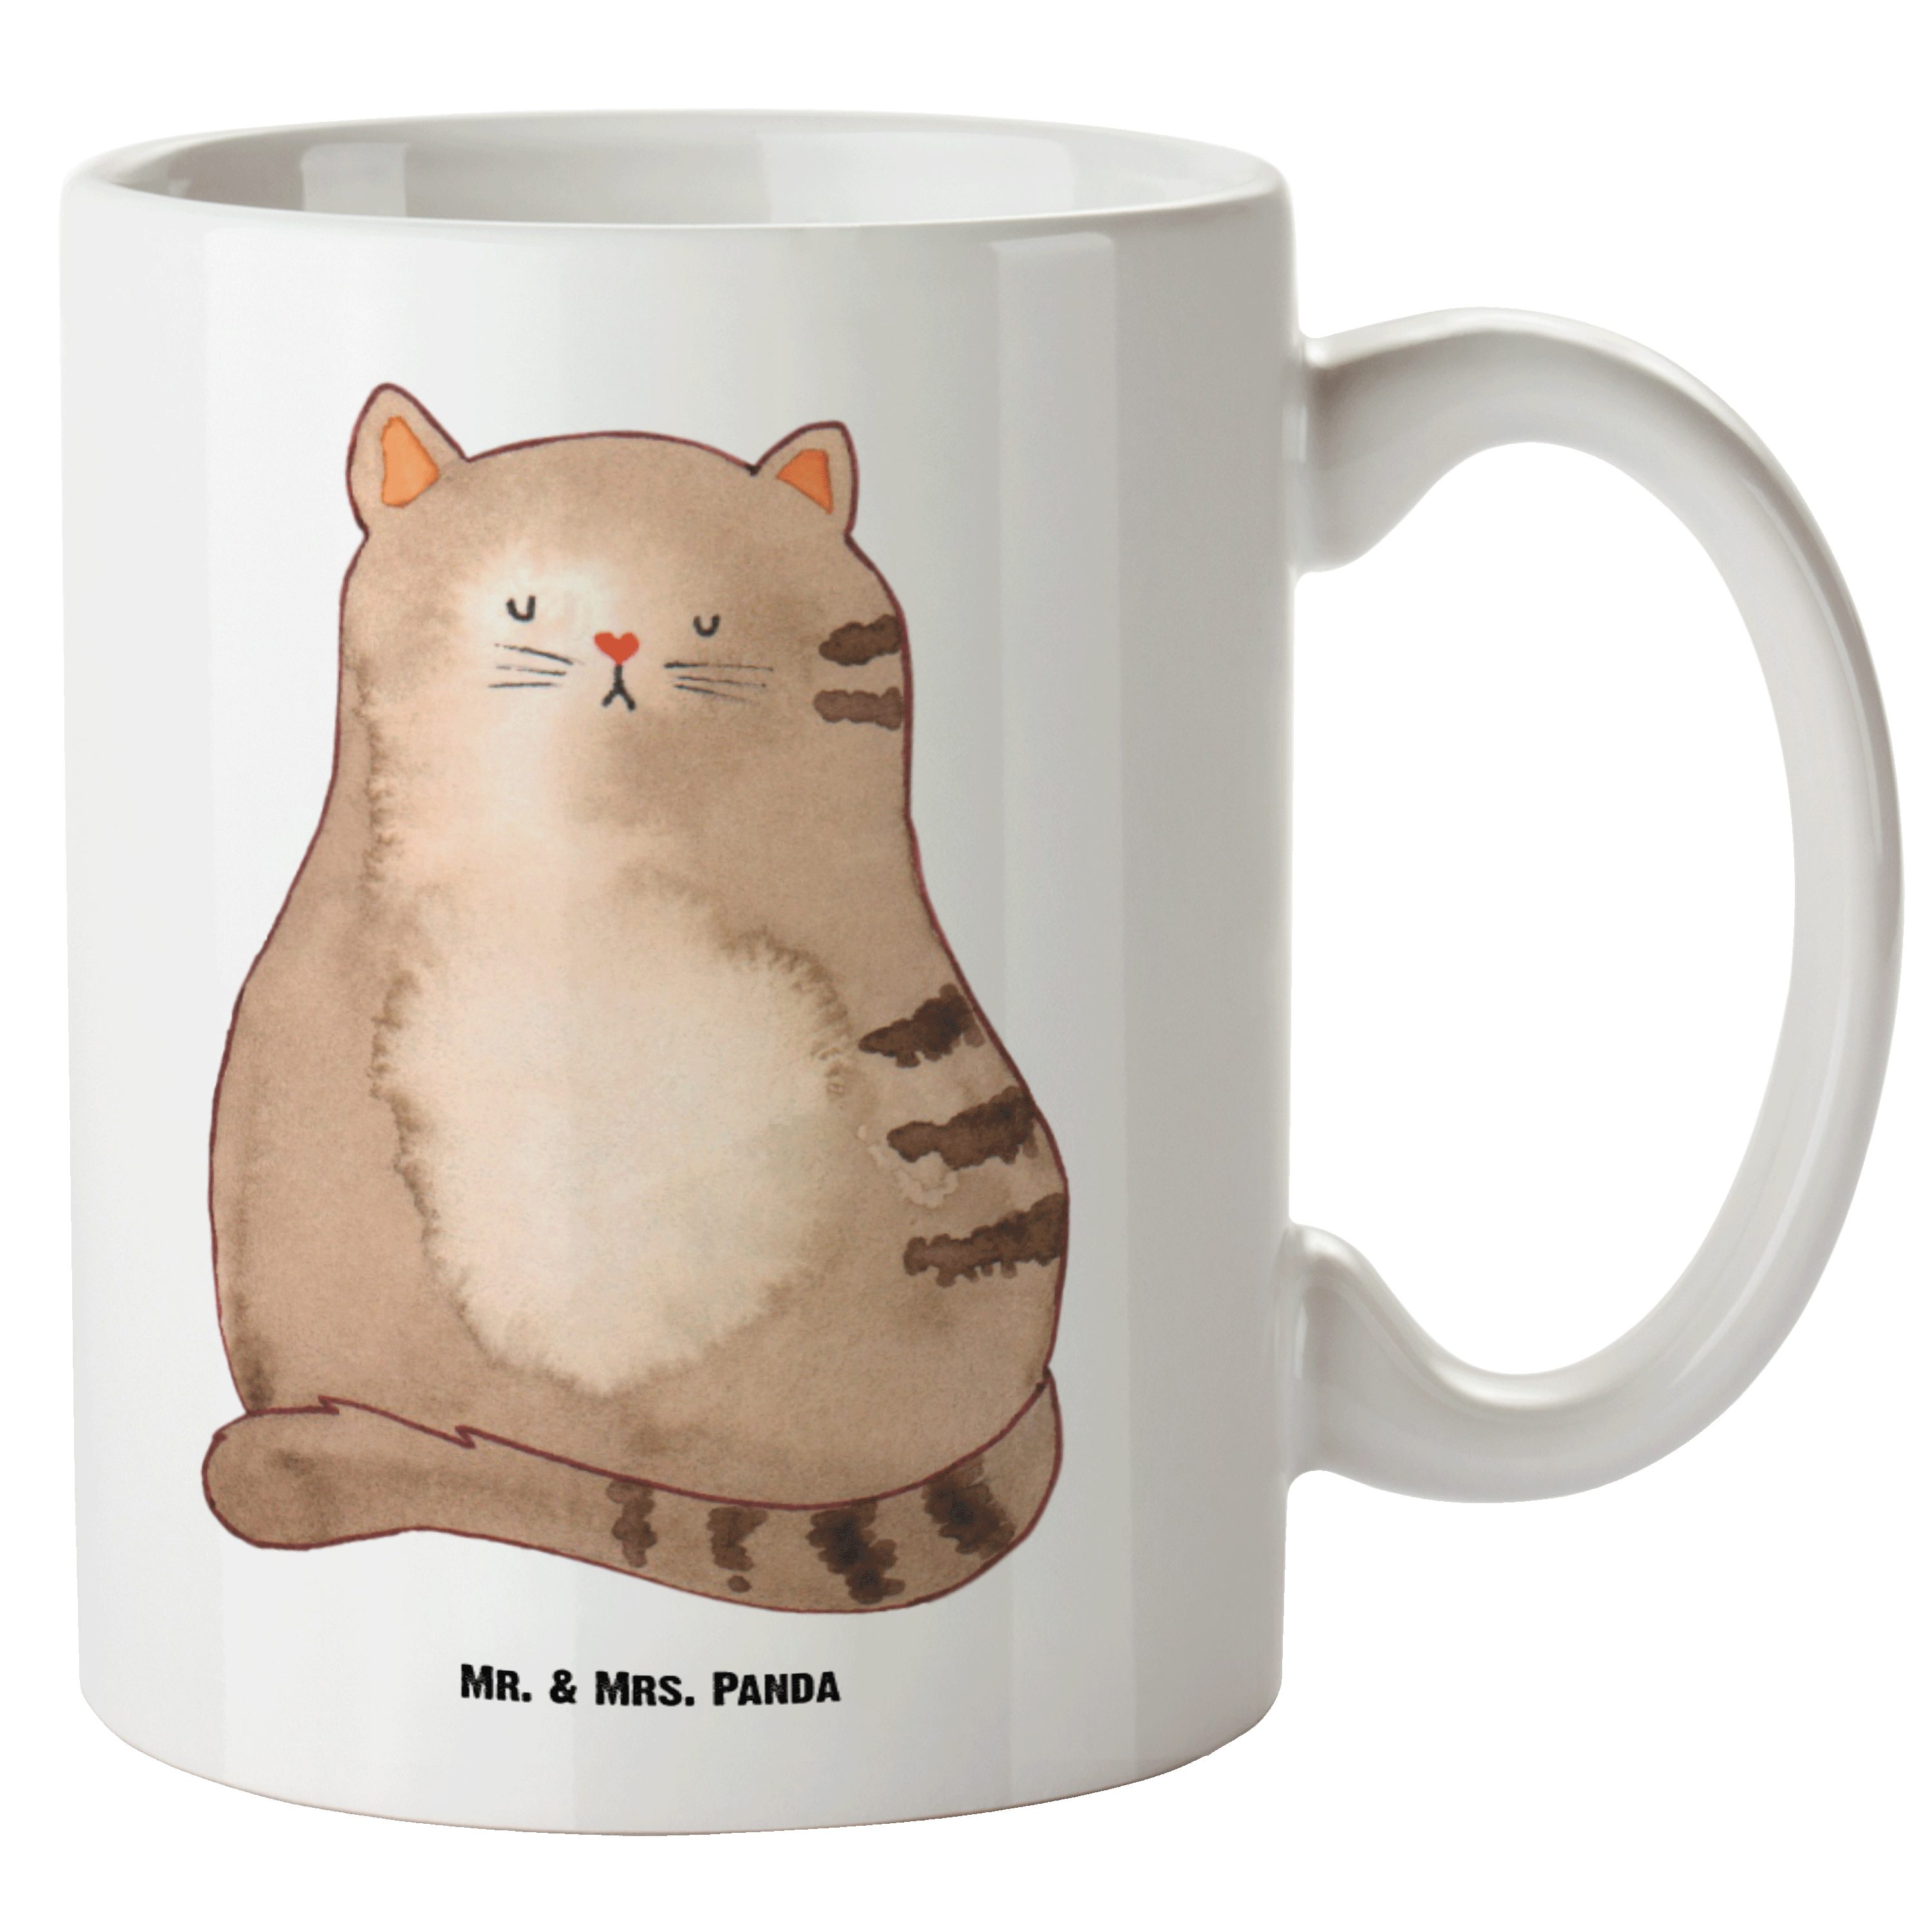 Mr. & Mrs. Panda Tasse Katze sitzend - Weiß - Geschenk, Katzenprodukte, Lebensinhalt, Katzen, XL Tasse Keramik